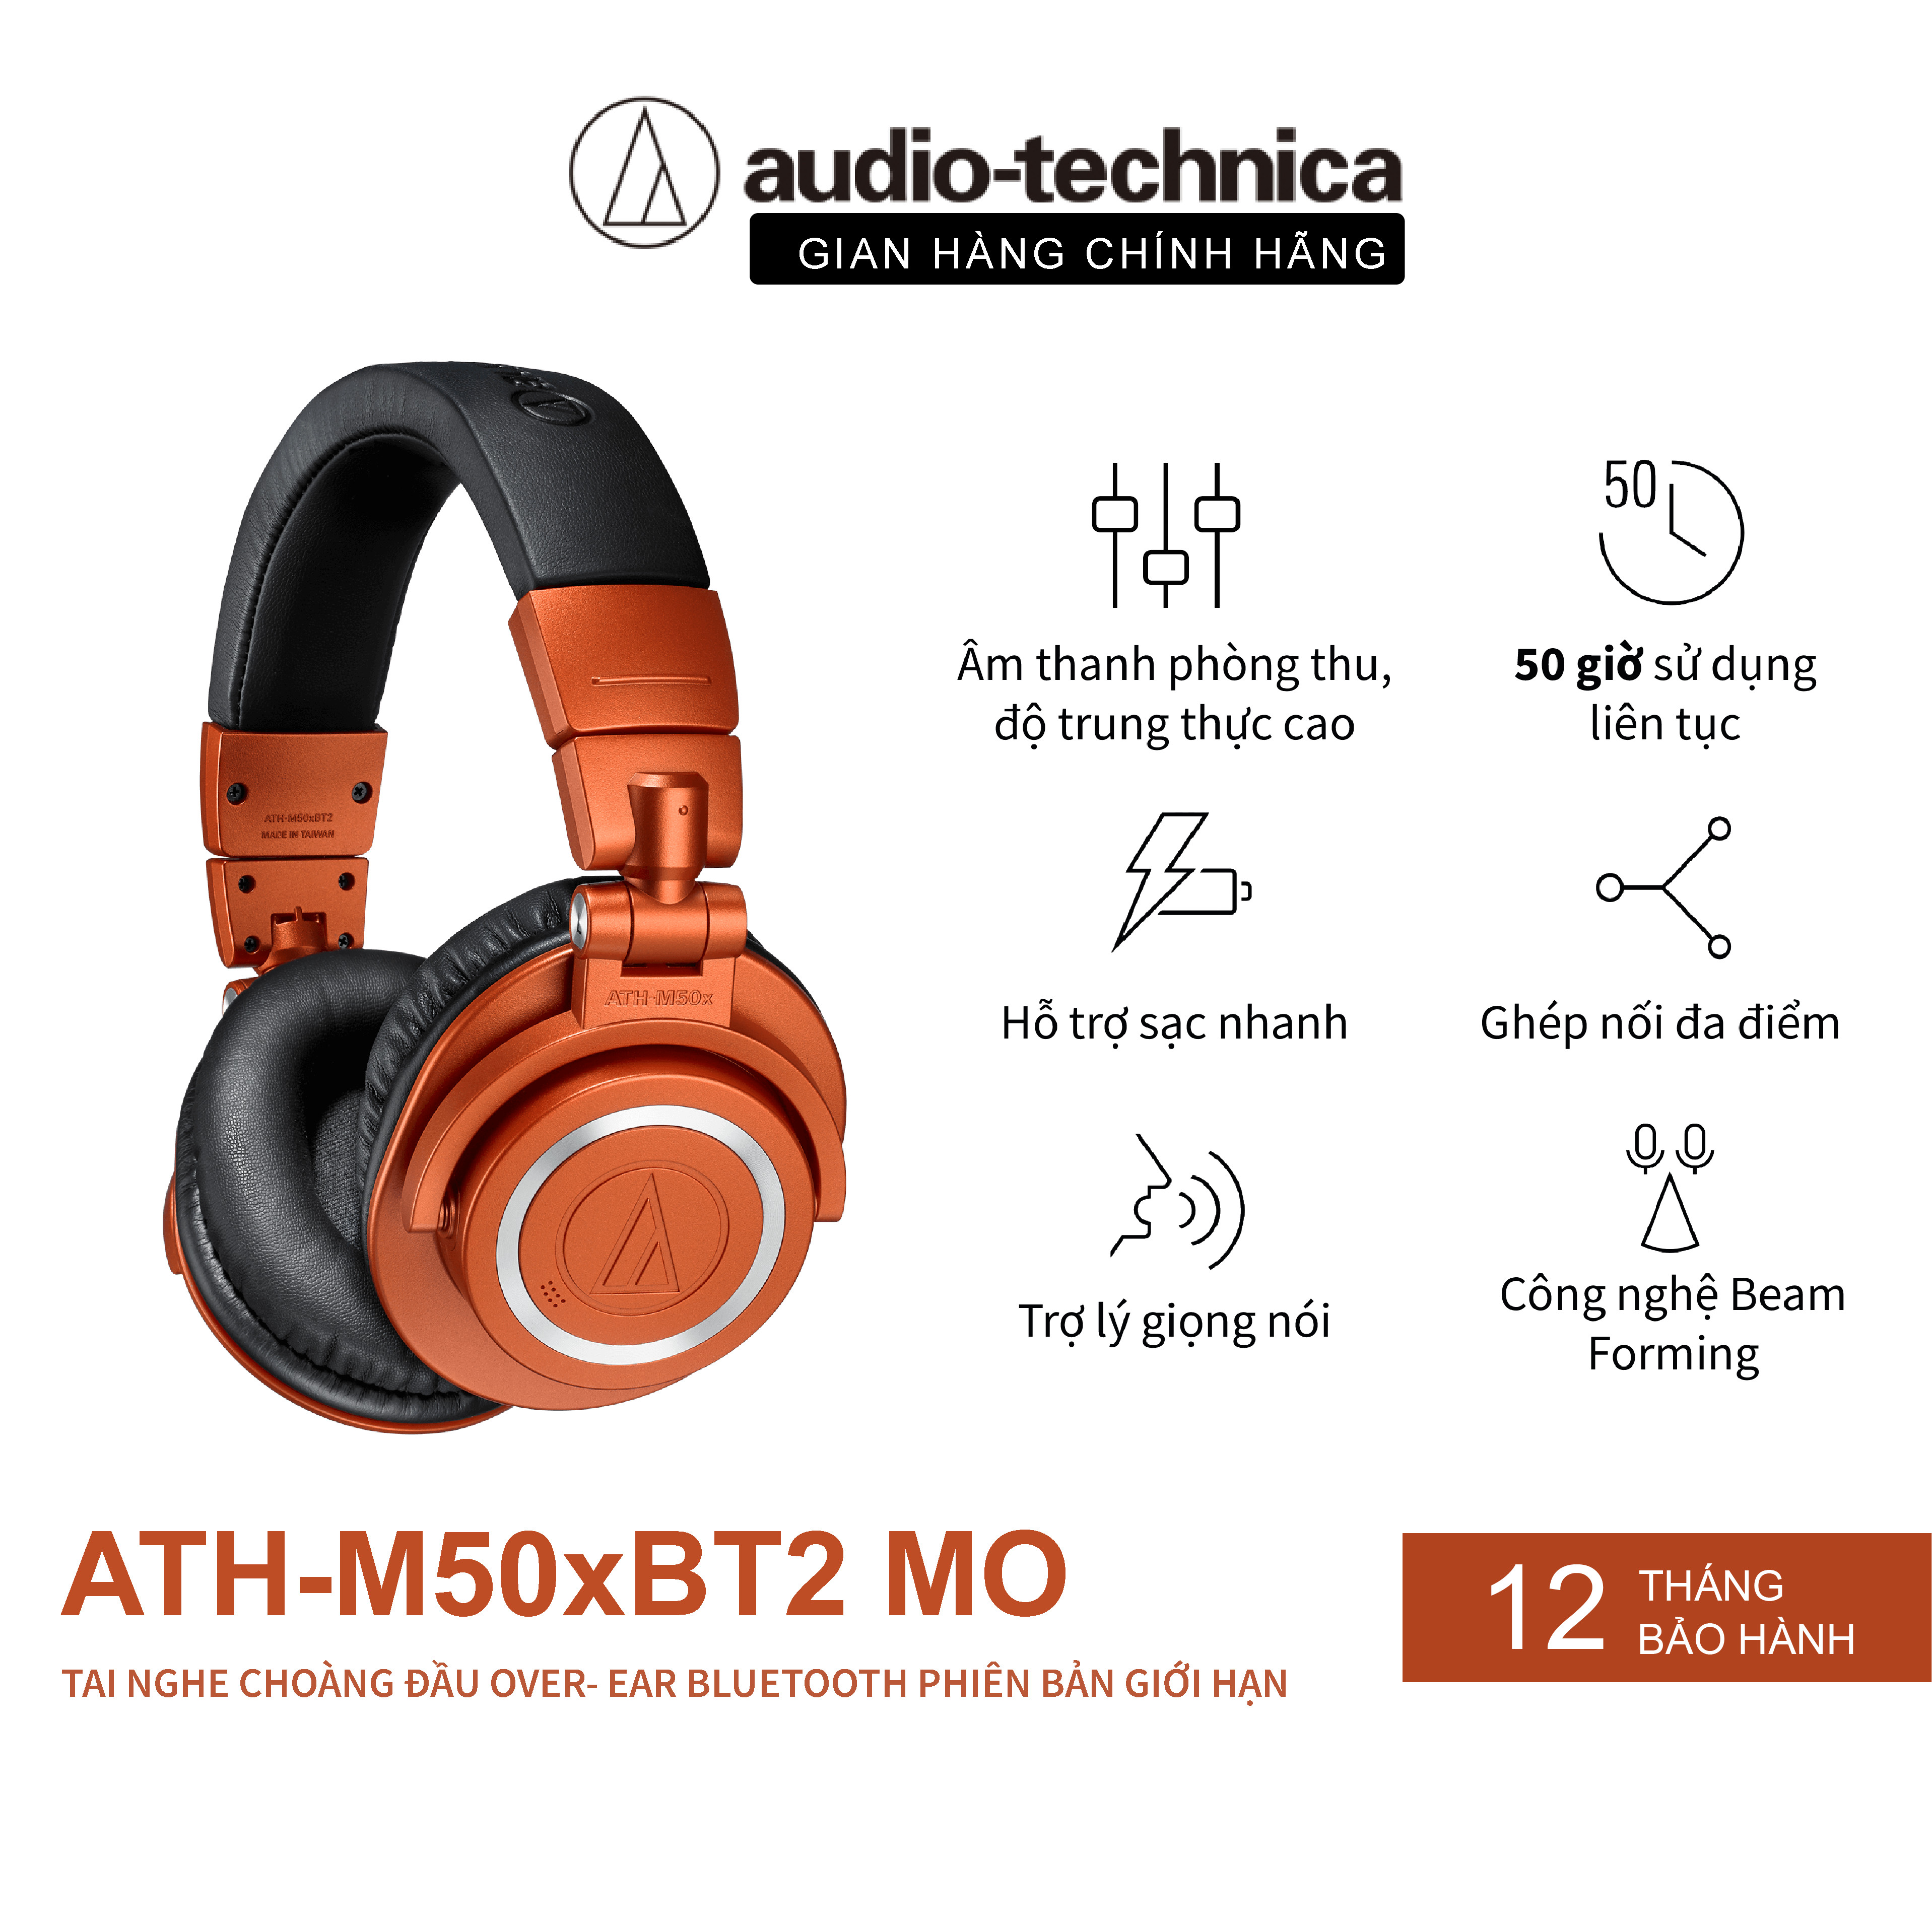 Tai nghe Over-ear Bluetooth Audio-technica ATH-M50xBT2 MO Hàng Chính Hãng